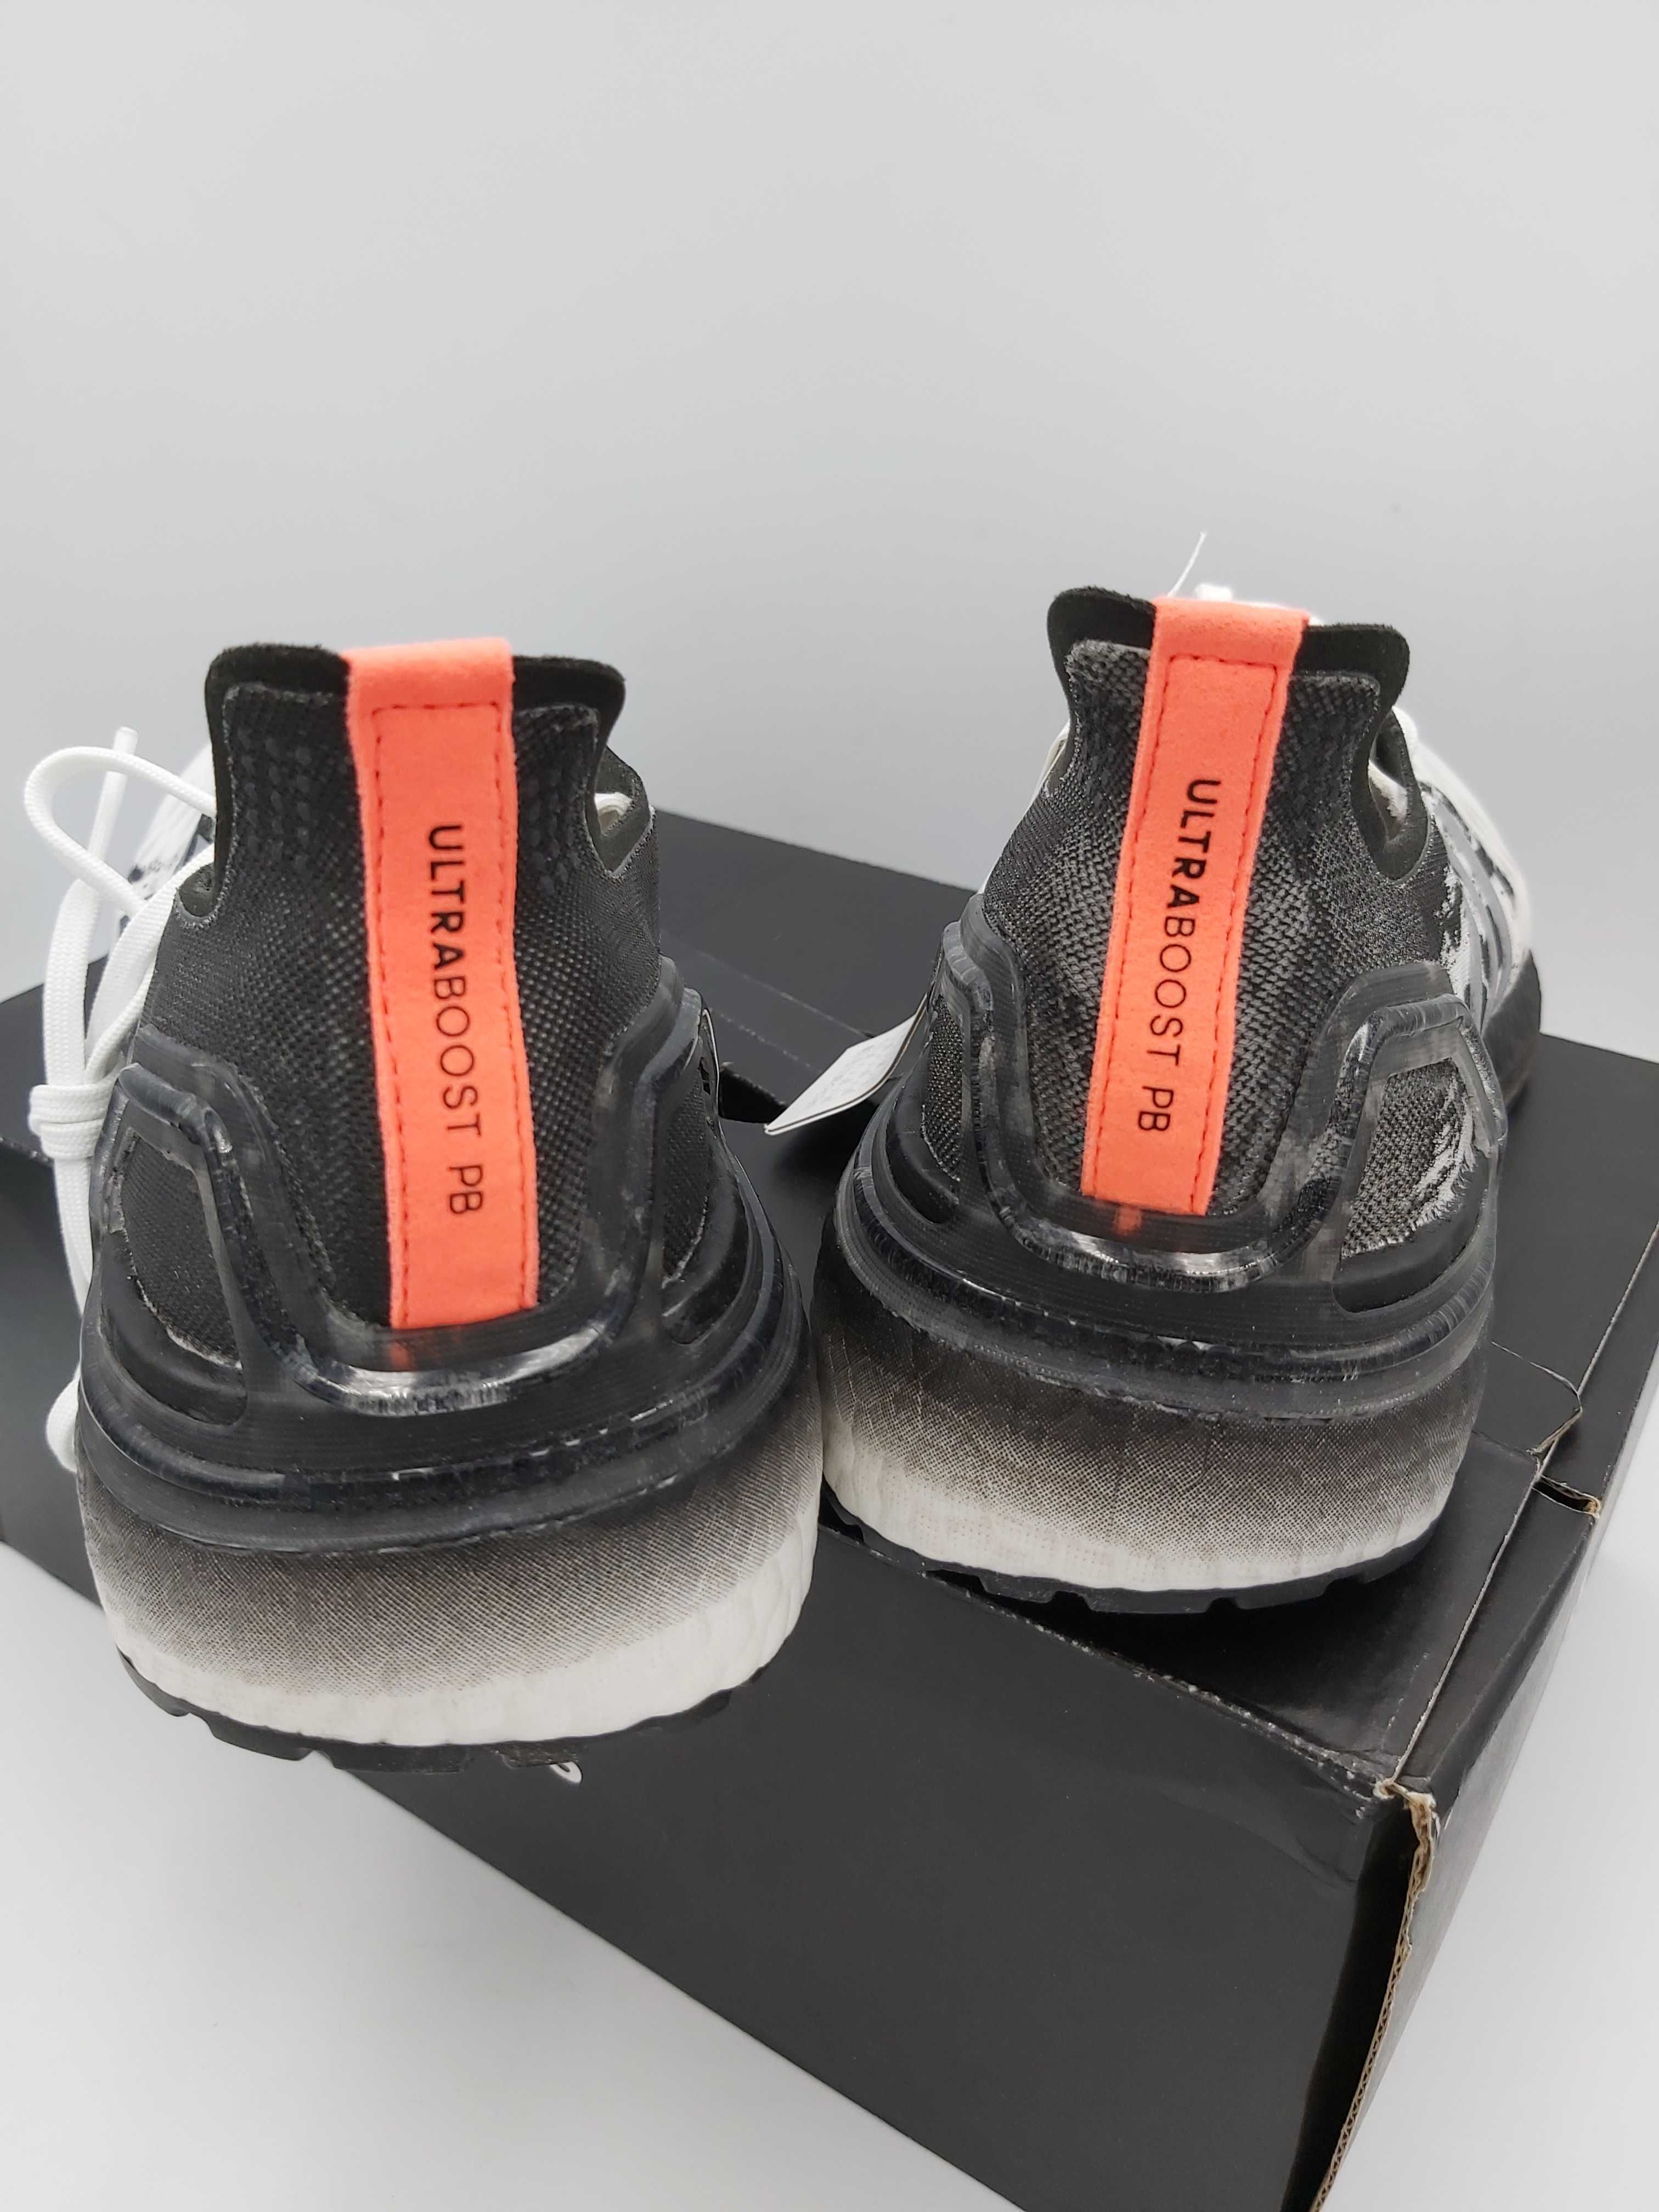 NOWE sneakersy ADIDAS ULTRABOOST 20 białe czarne 40 c186